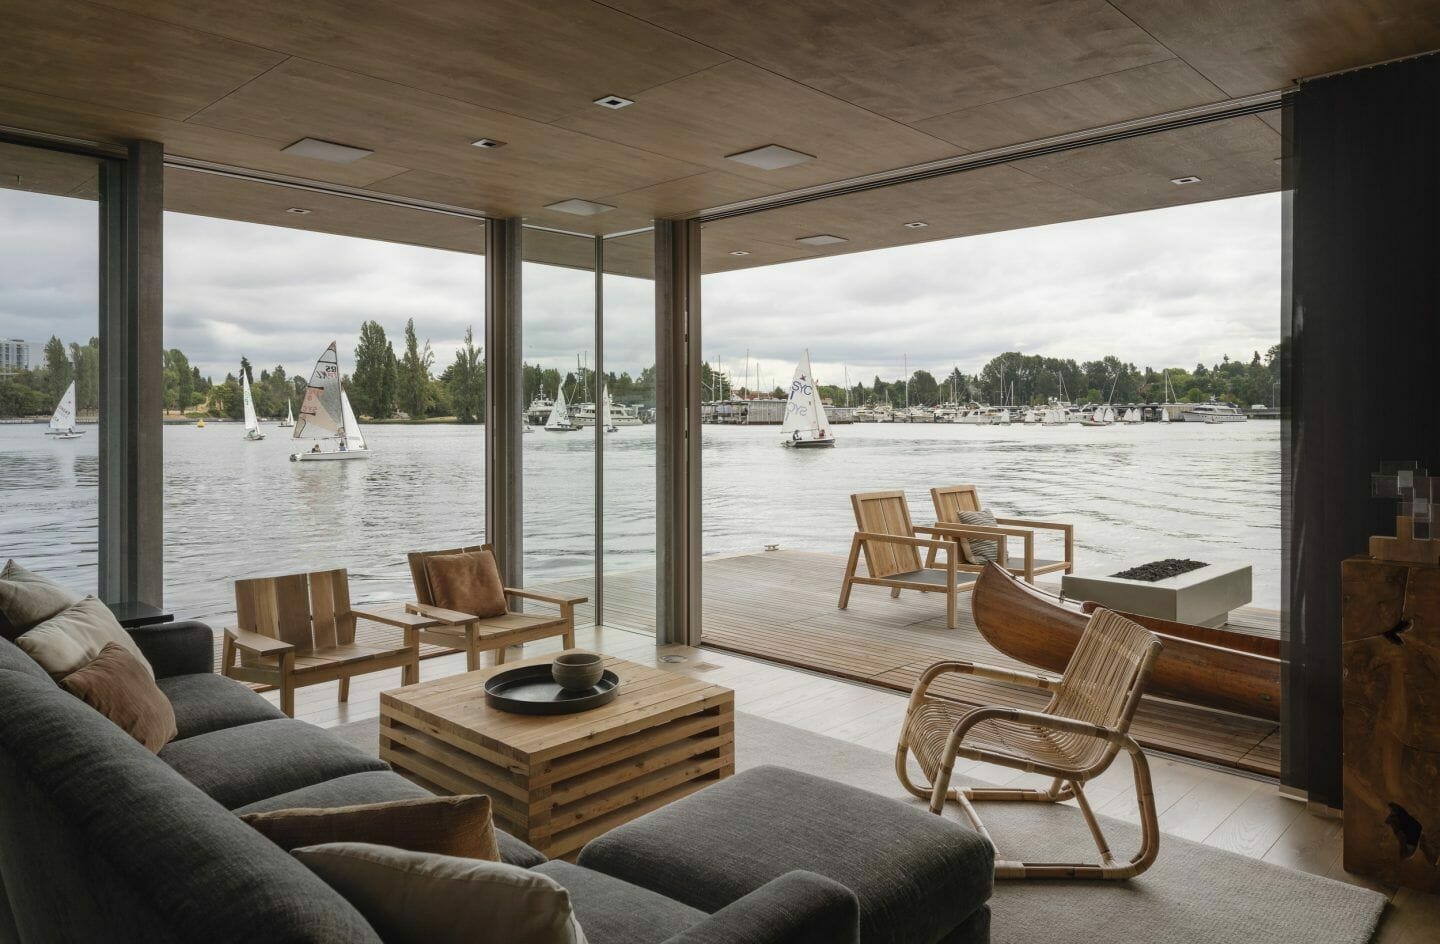 Woonboot van architect Olson Kundig in Seattle